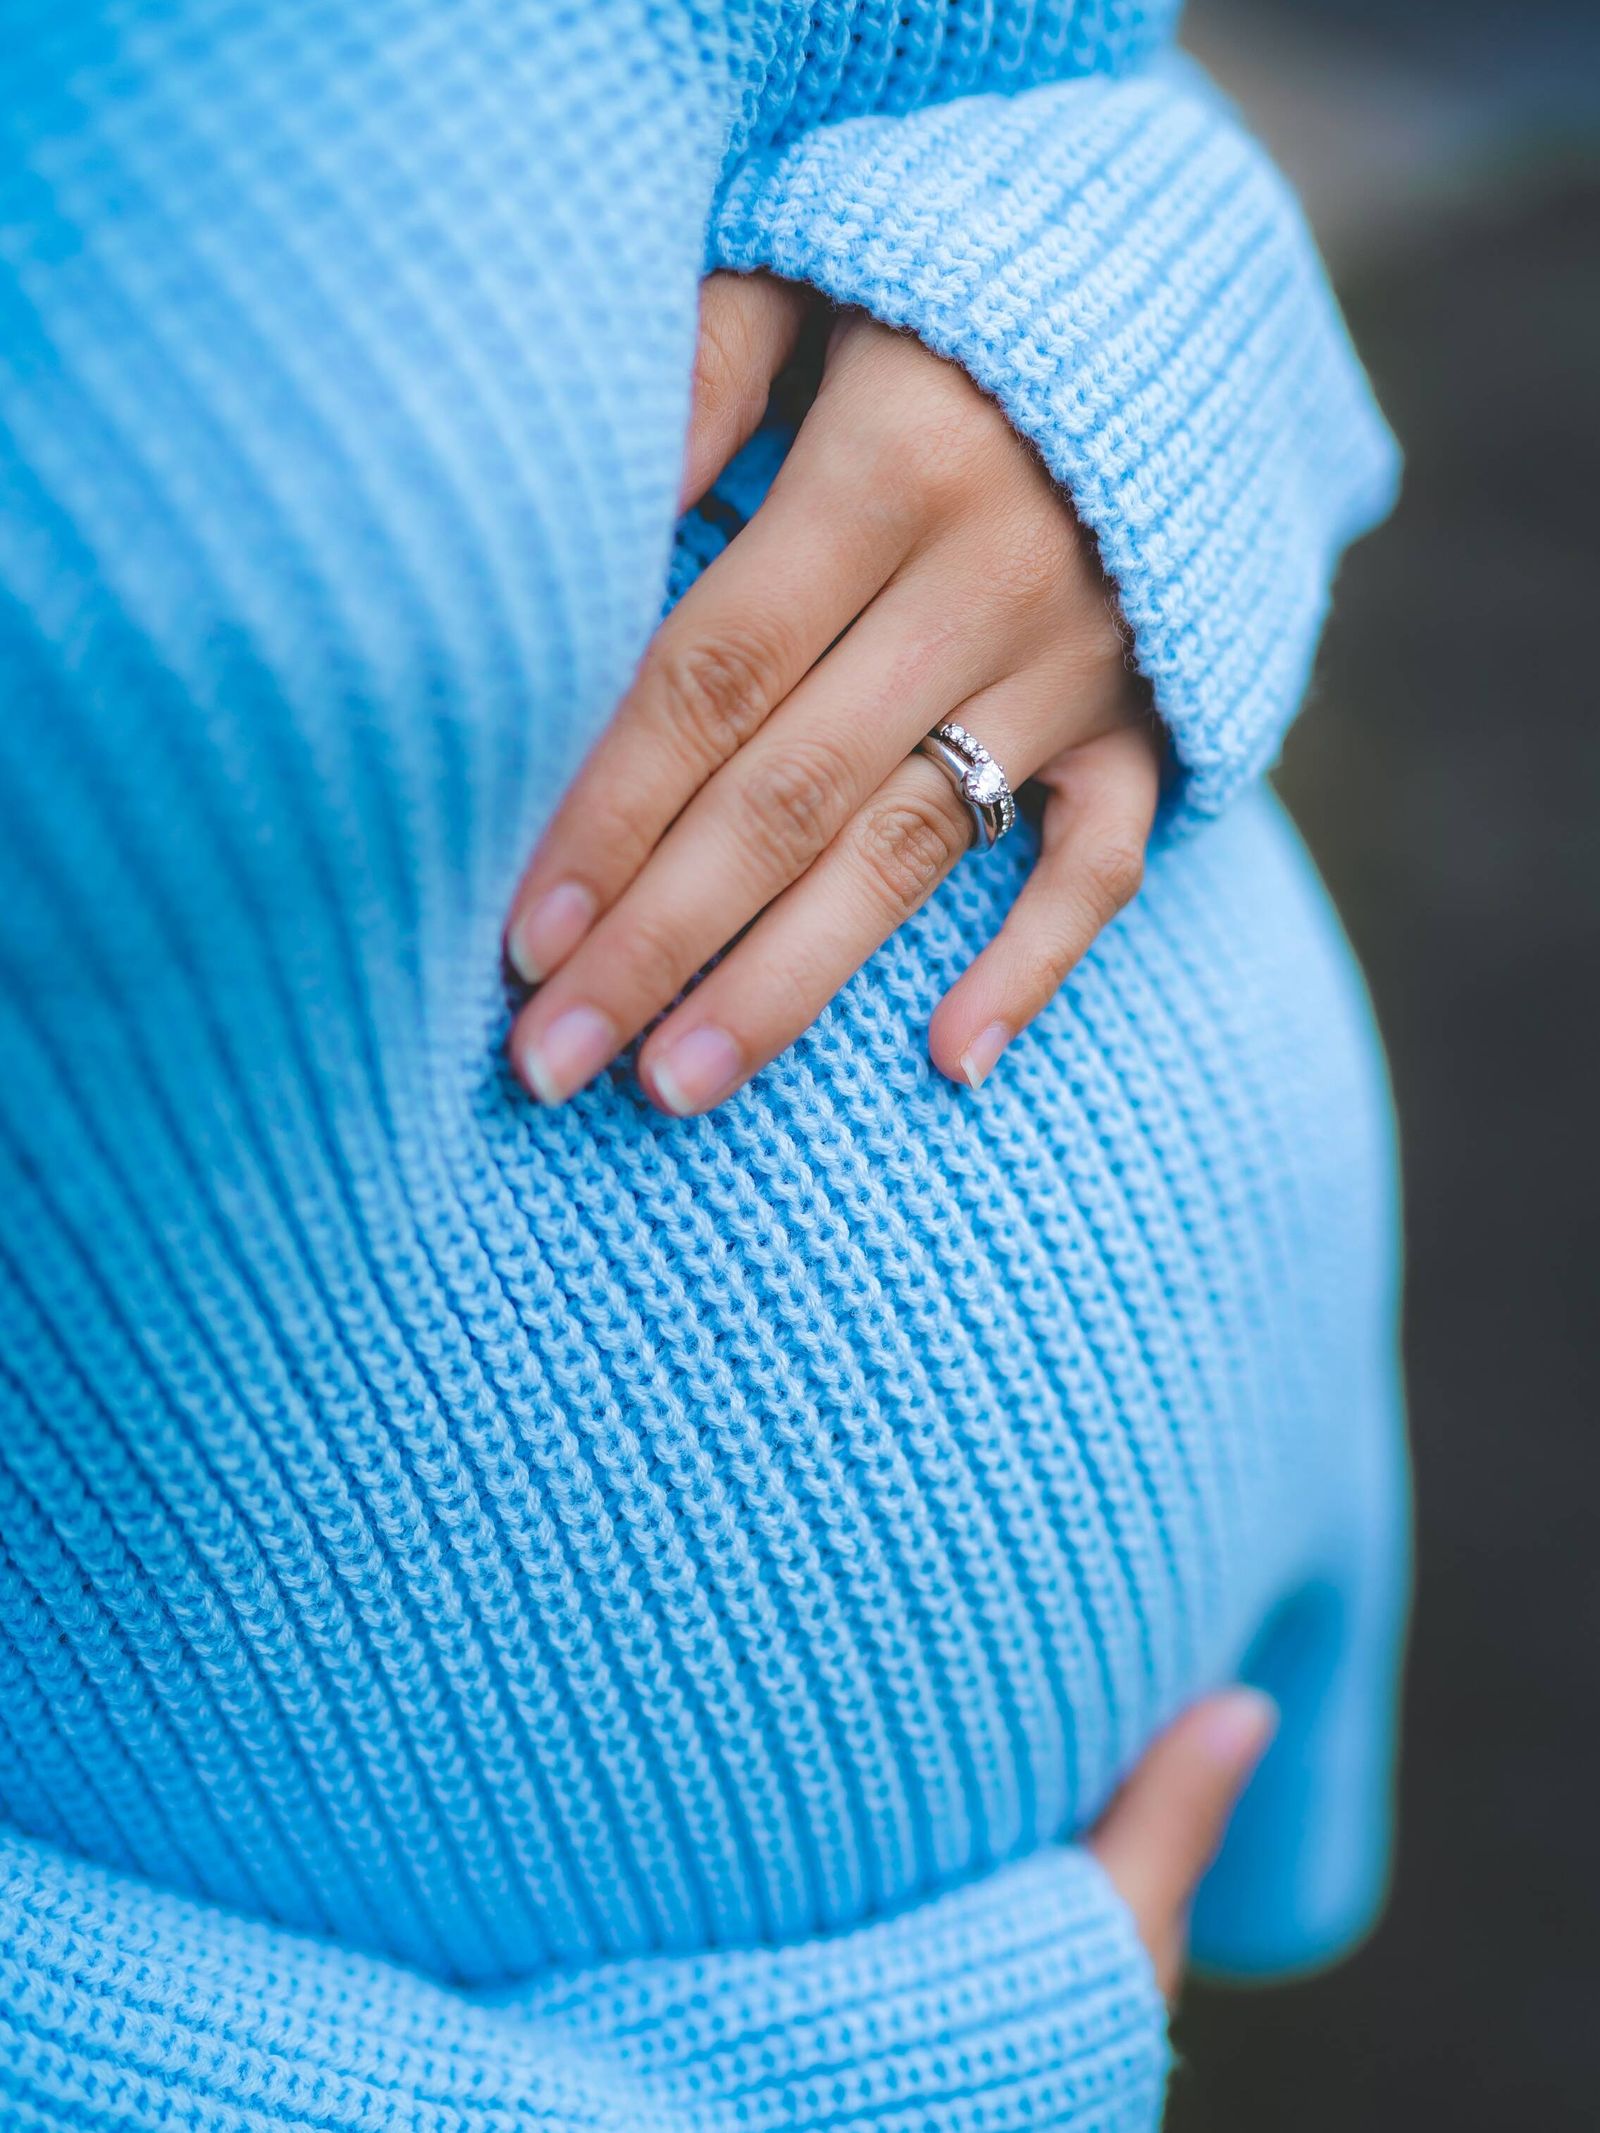 Opciones para un embarazo pasados los 40 años. (Unsplash/Juan Encalada)